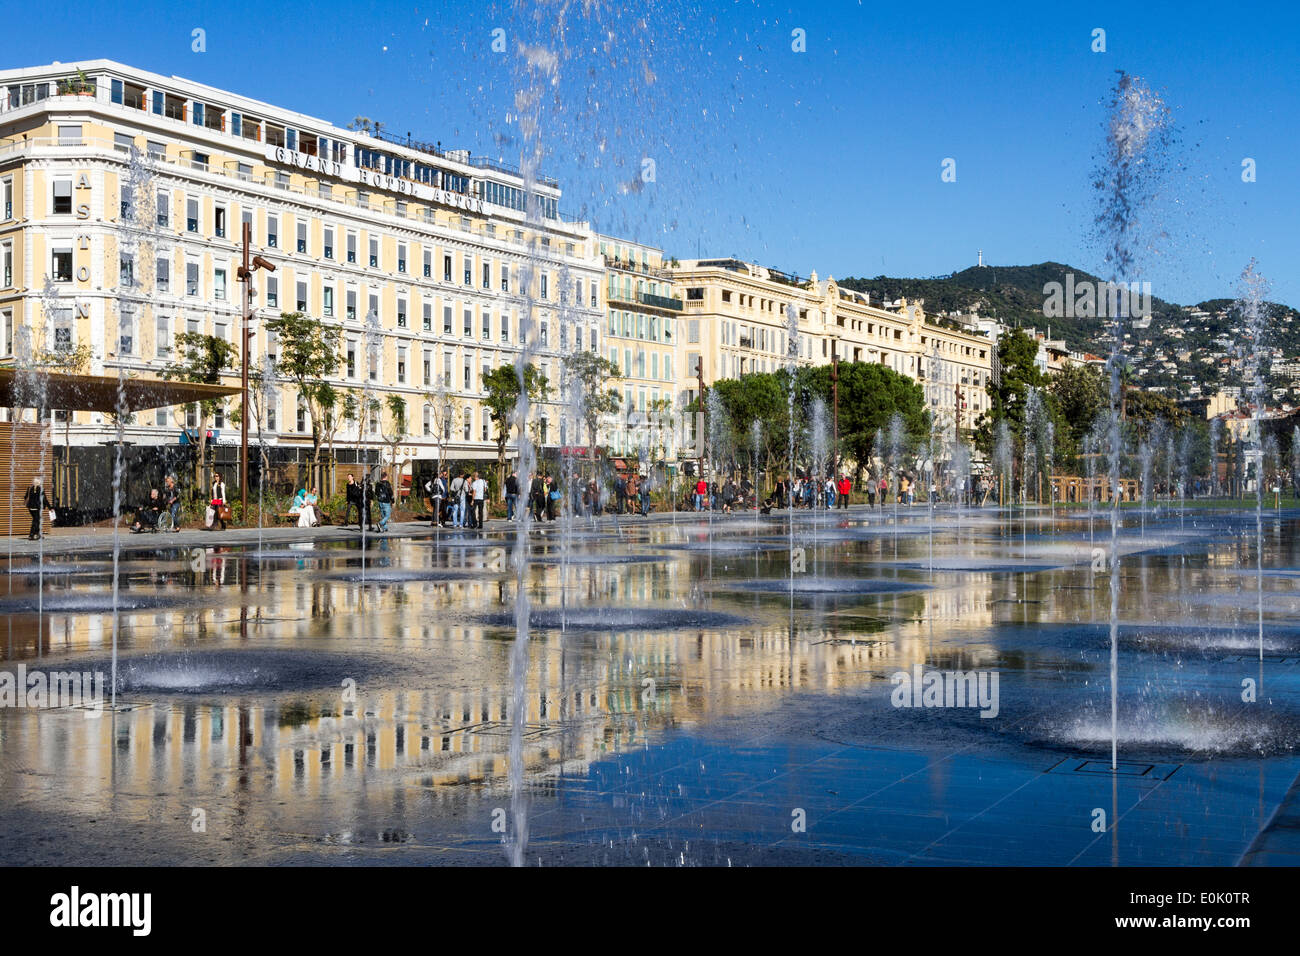 Miroir d ' eau, Espace Massena, Nizza, Côte d ' Azur, Frankreich Stockfoto